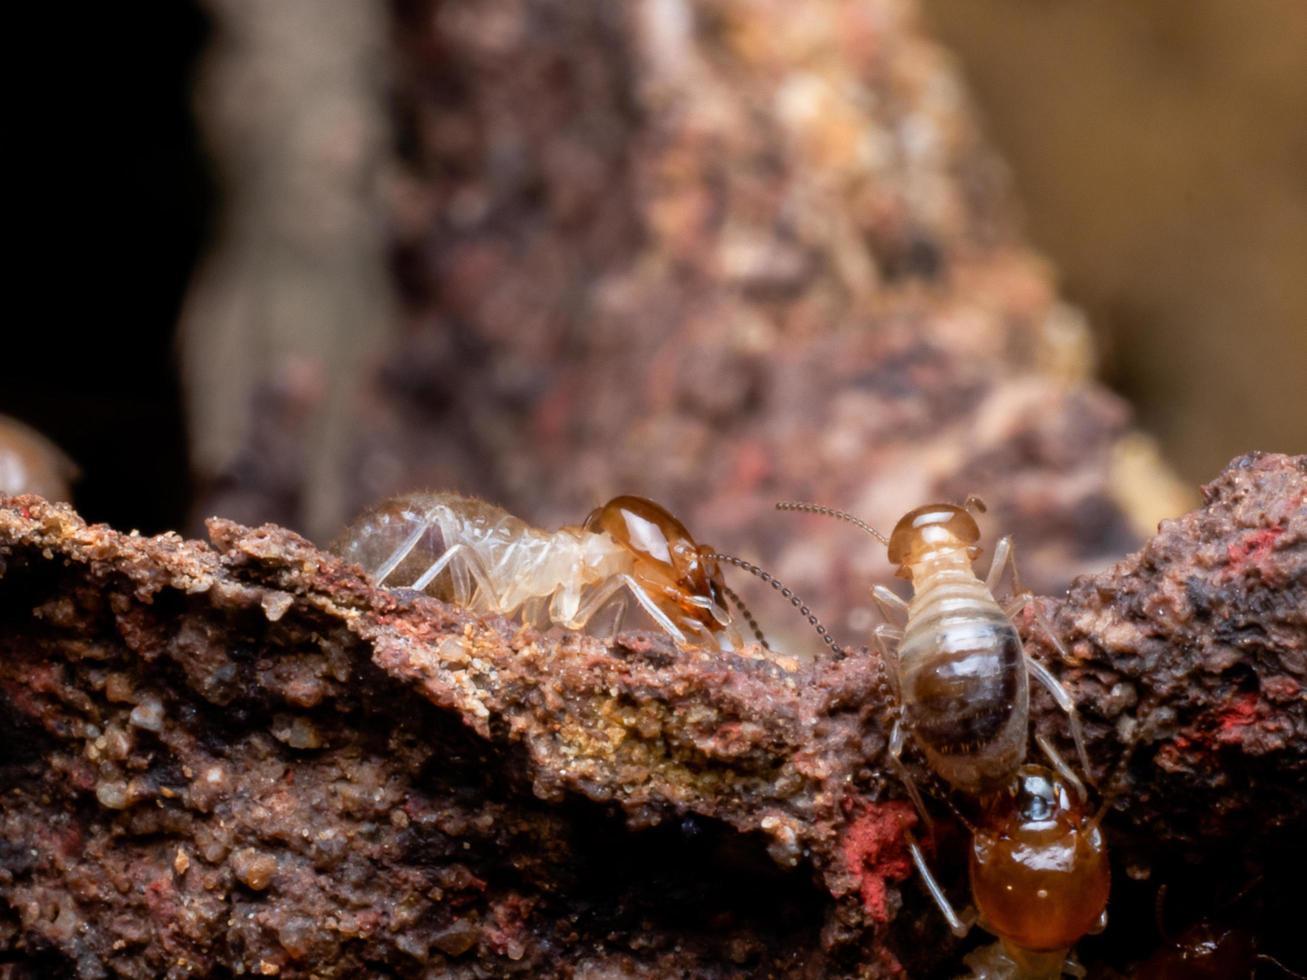 termieten zijn sociale wezens die houten huizen van mensen beschadigen omdat ze hout eten foto